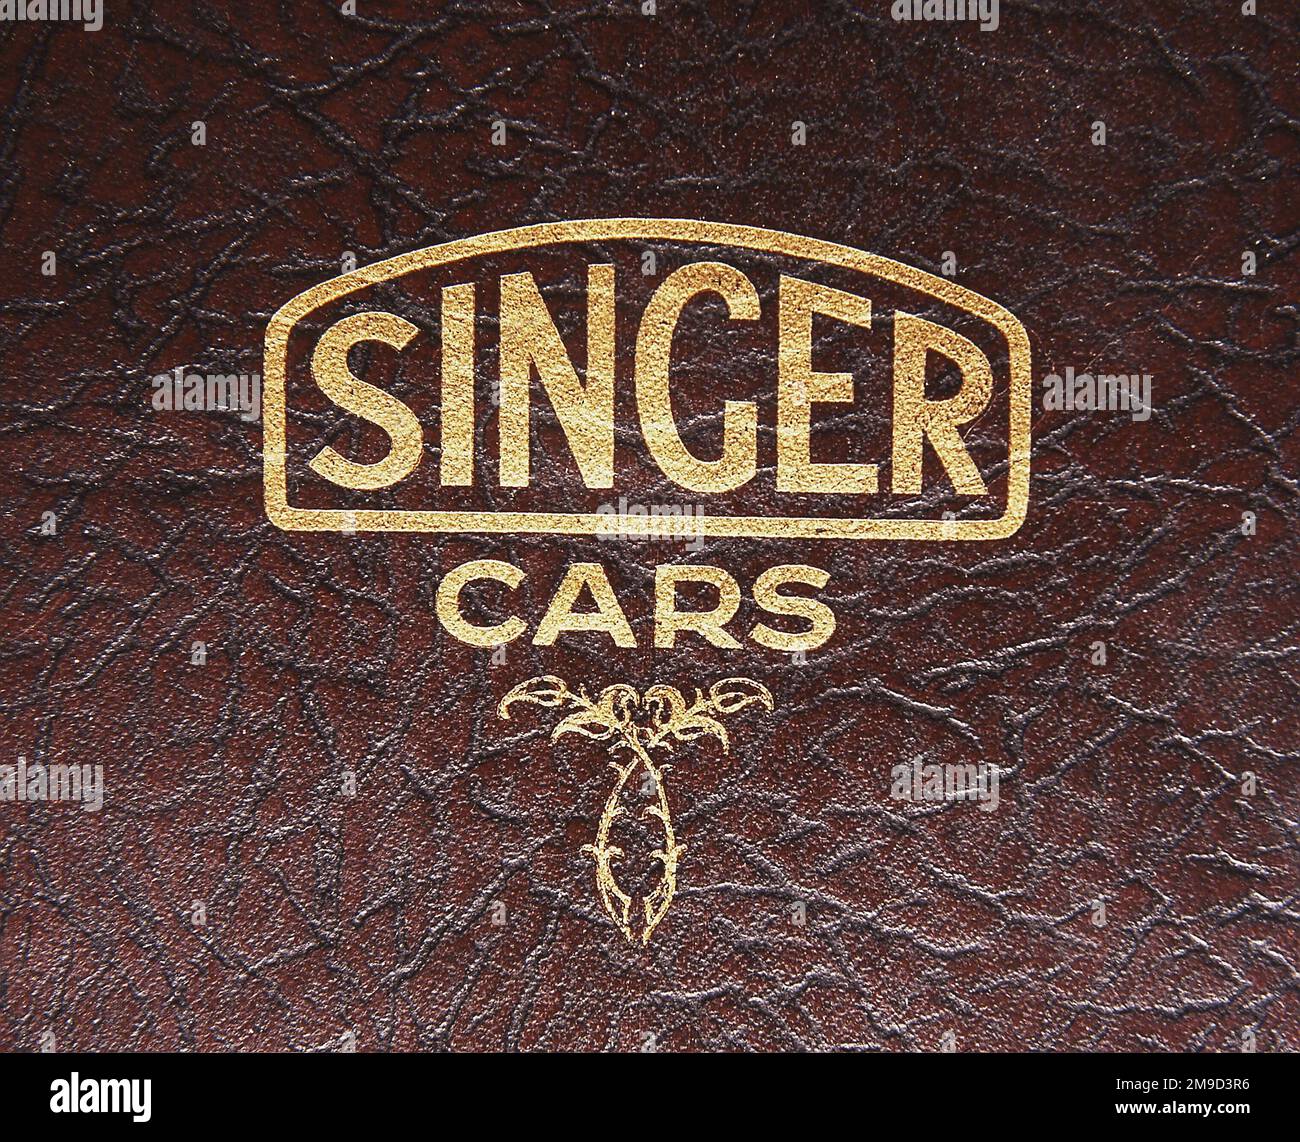 Logo Singer Cars, stampato in foglia d'oro su pelle come quella utilizzata per la tappezzeria delle loro auto, copertina dell'album di presentazione, 1927. Foto Stock